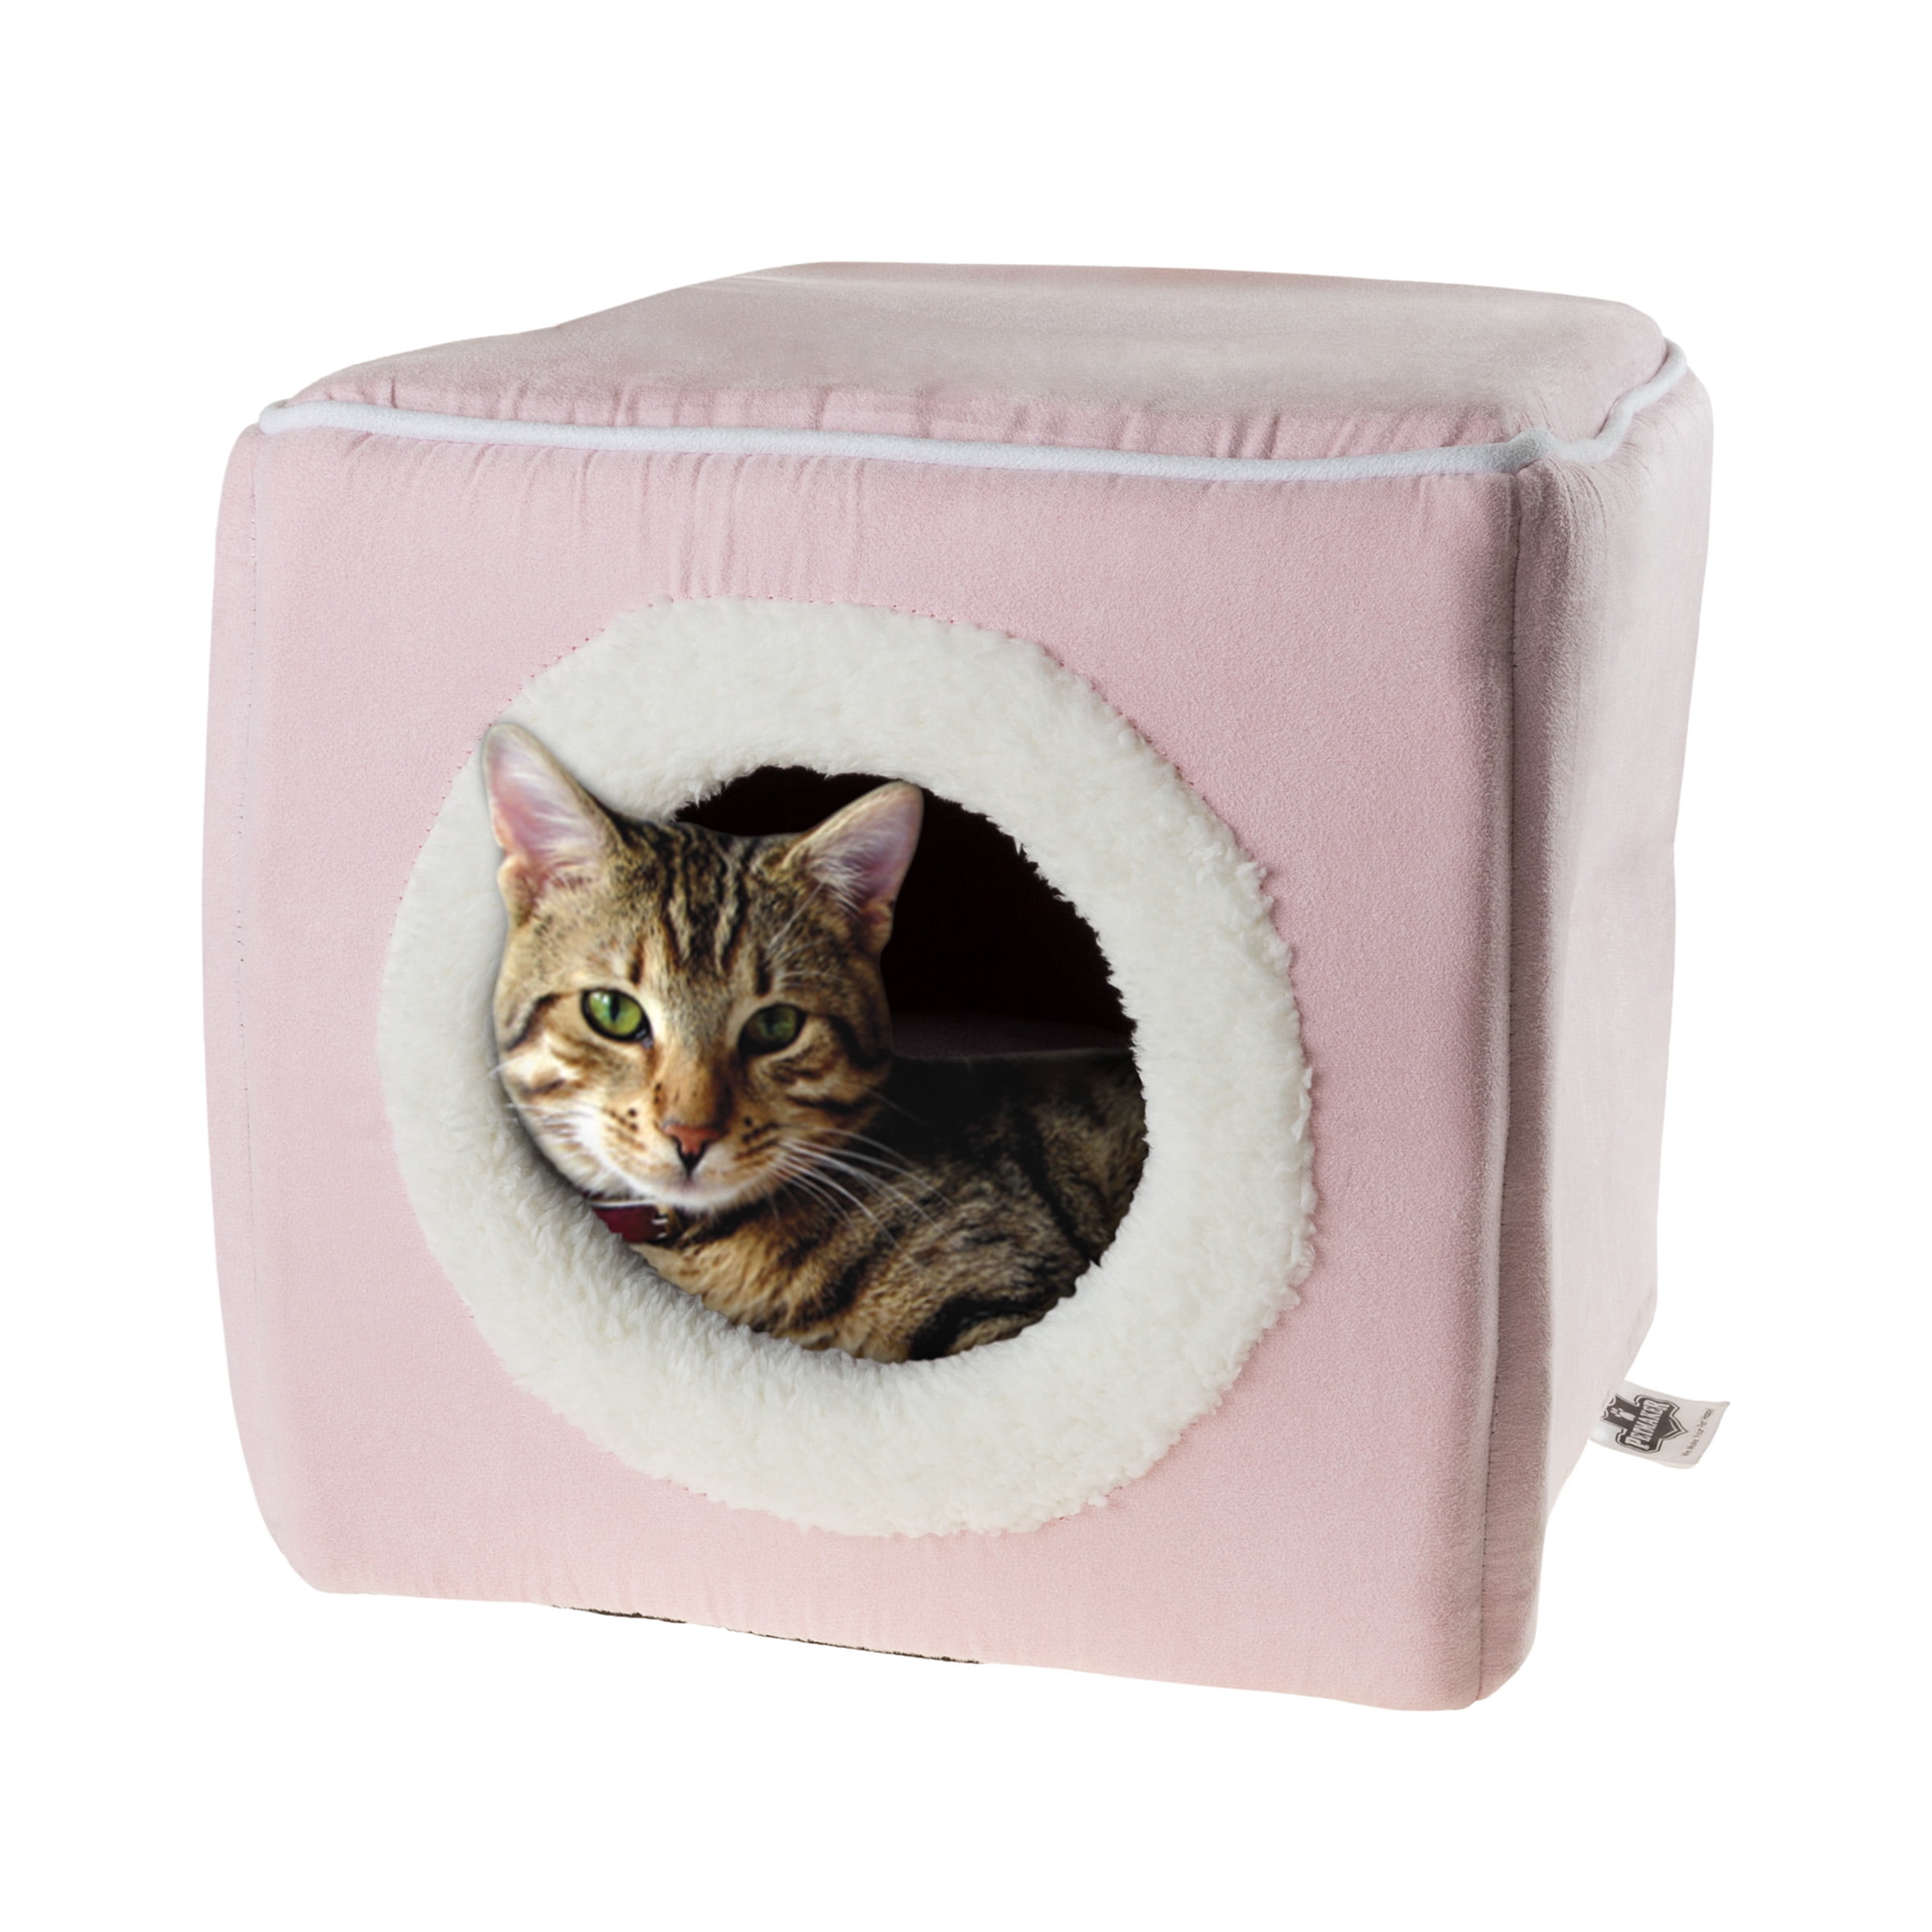 Cat House Condo Fleece Bed Soft Comfort Kitten Dog Pet Furniture Brown Suede New 